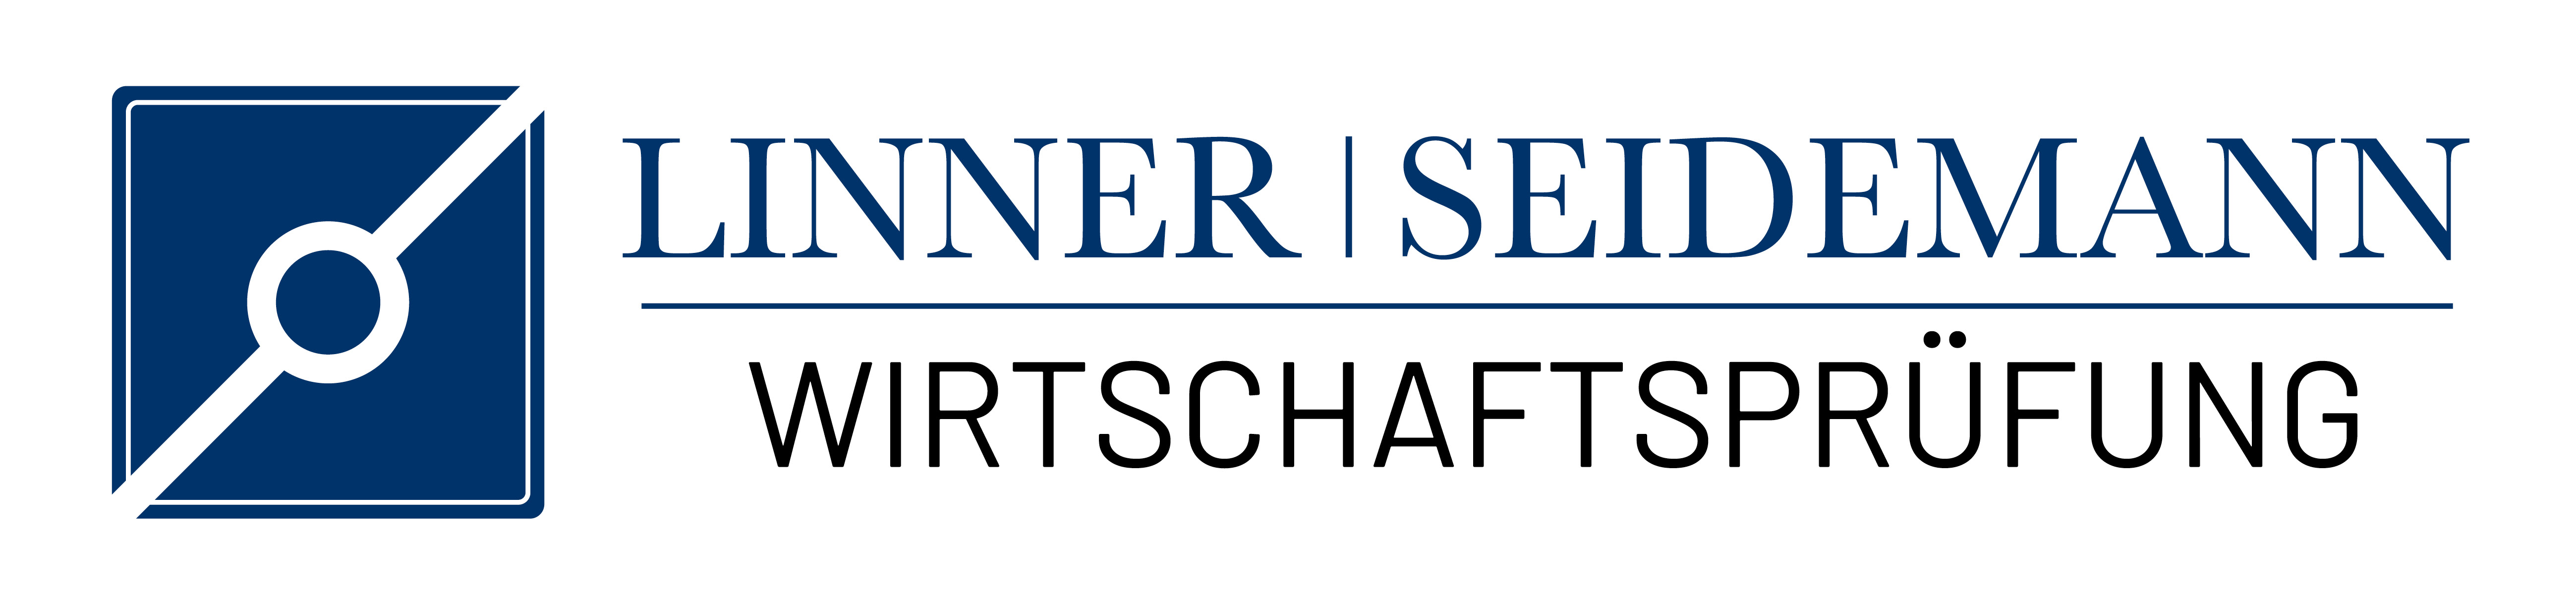 Linner Seidemann Wirtschaftsprüfung Logo